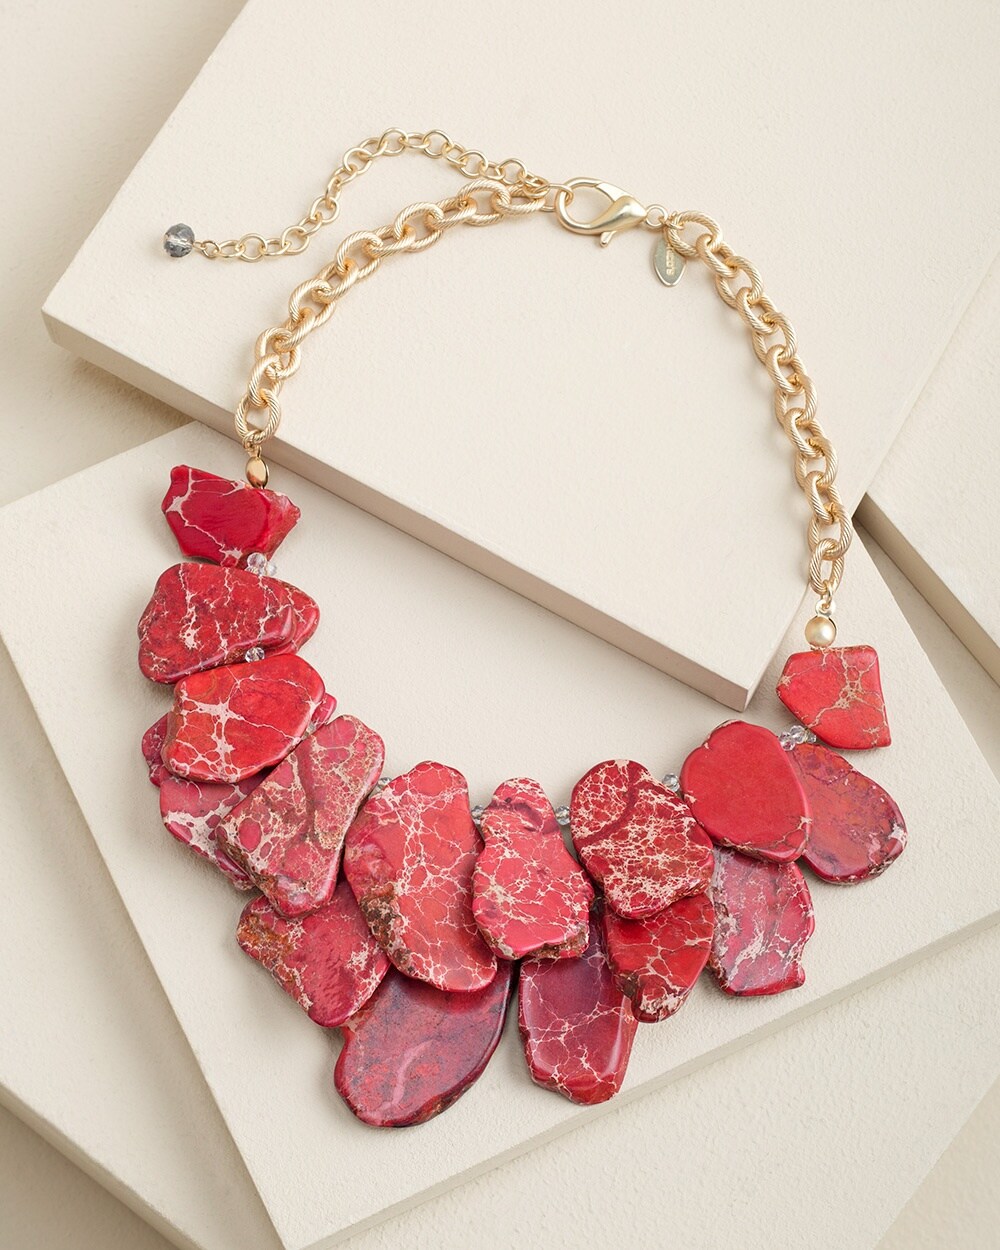 Red-Dyed Genuine Versciatite Necklace